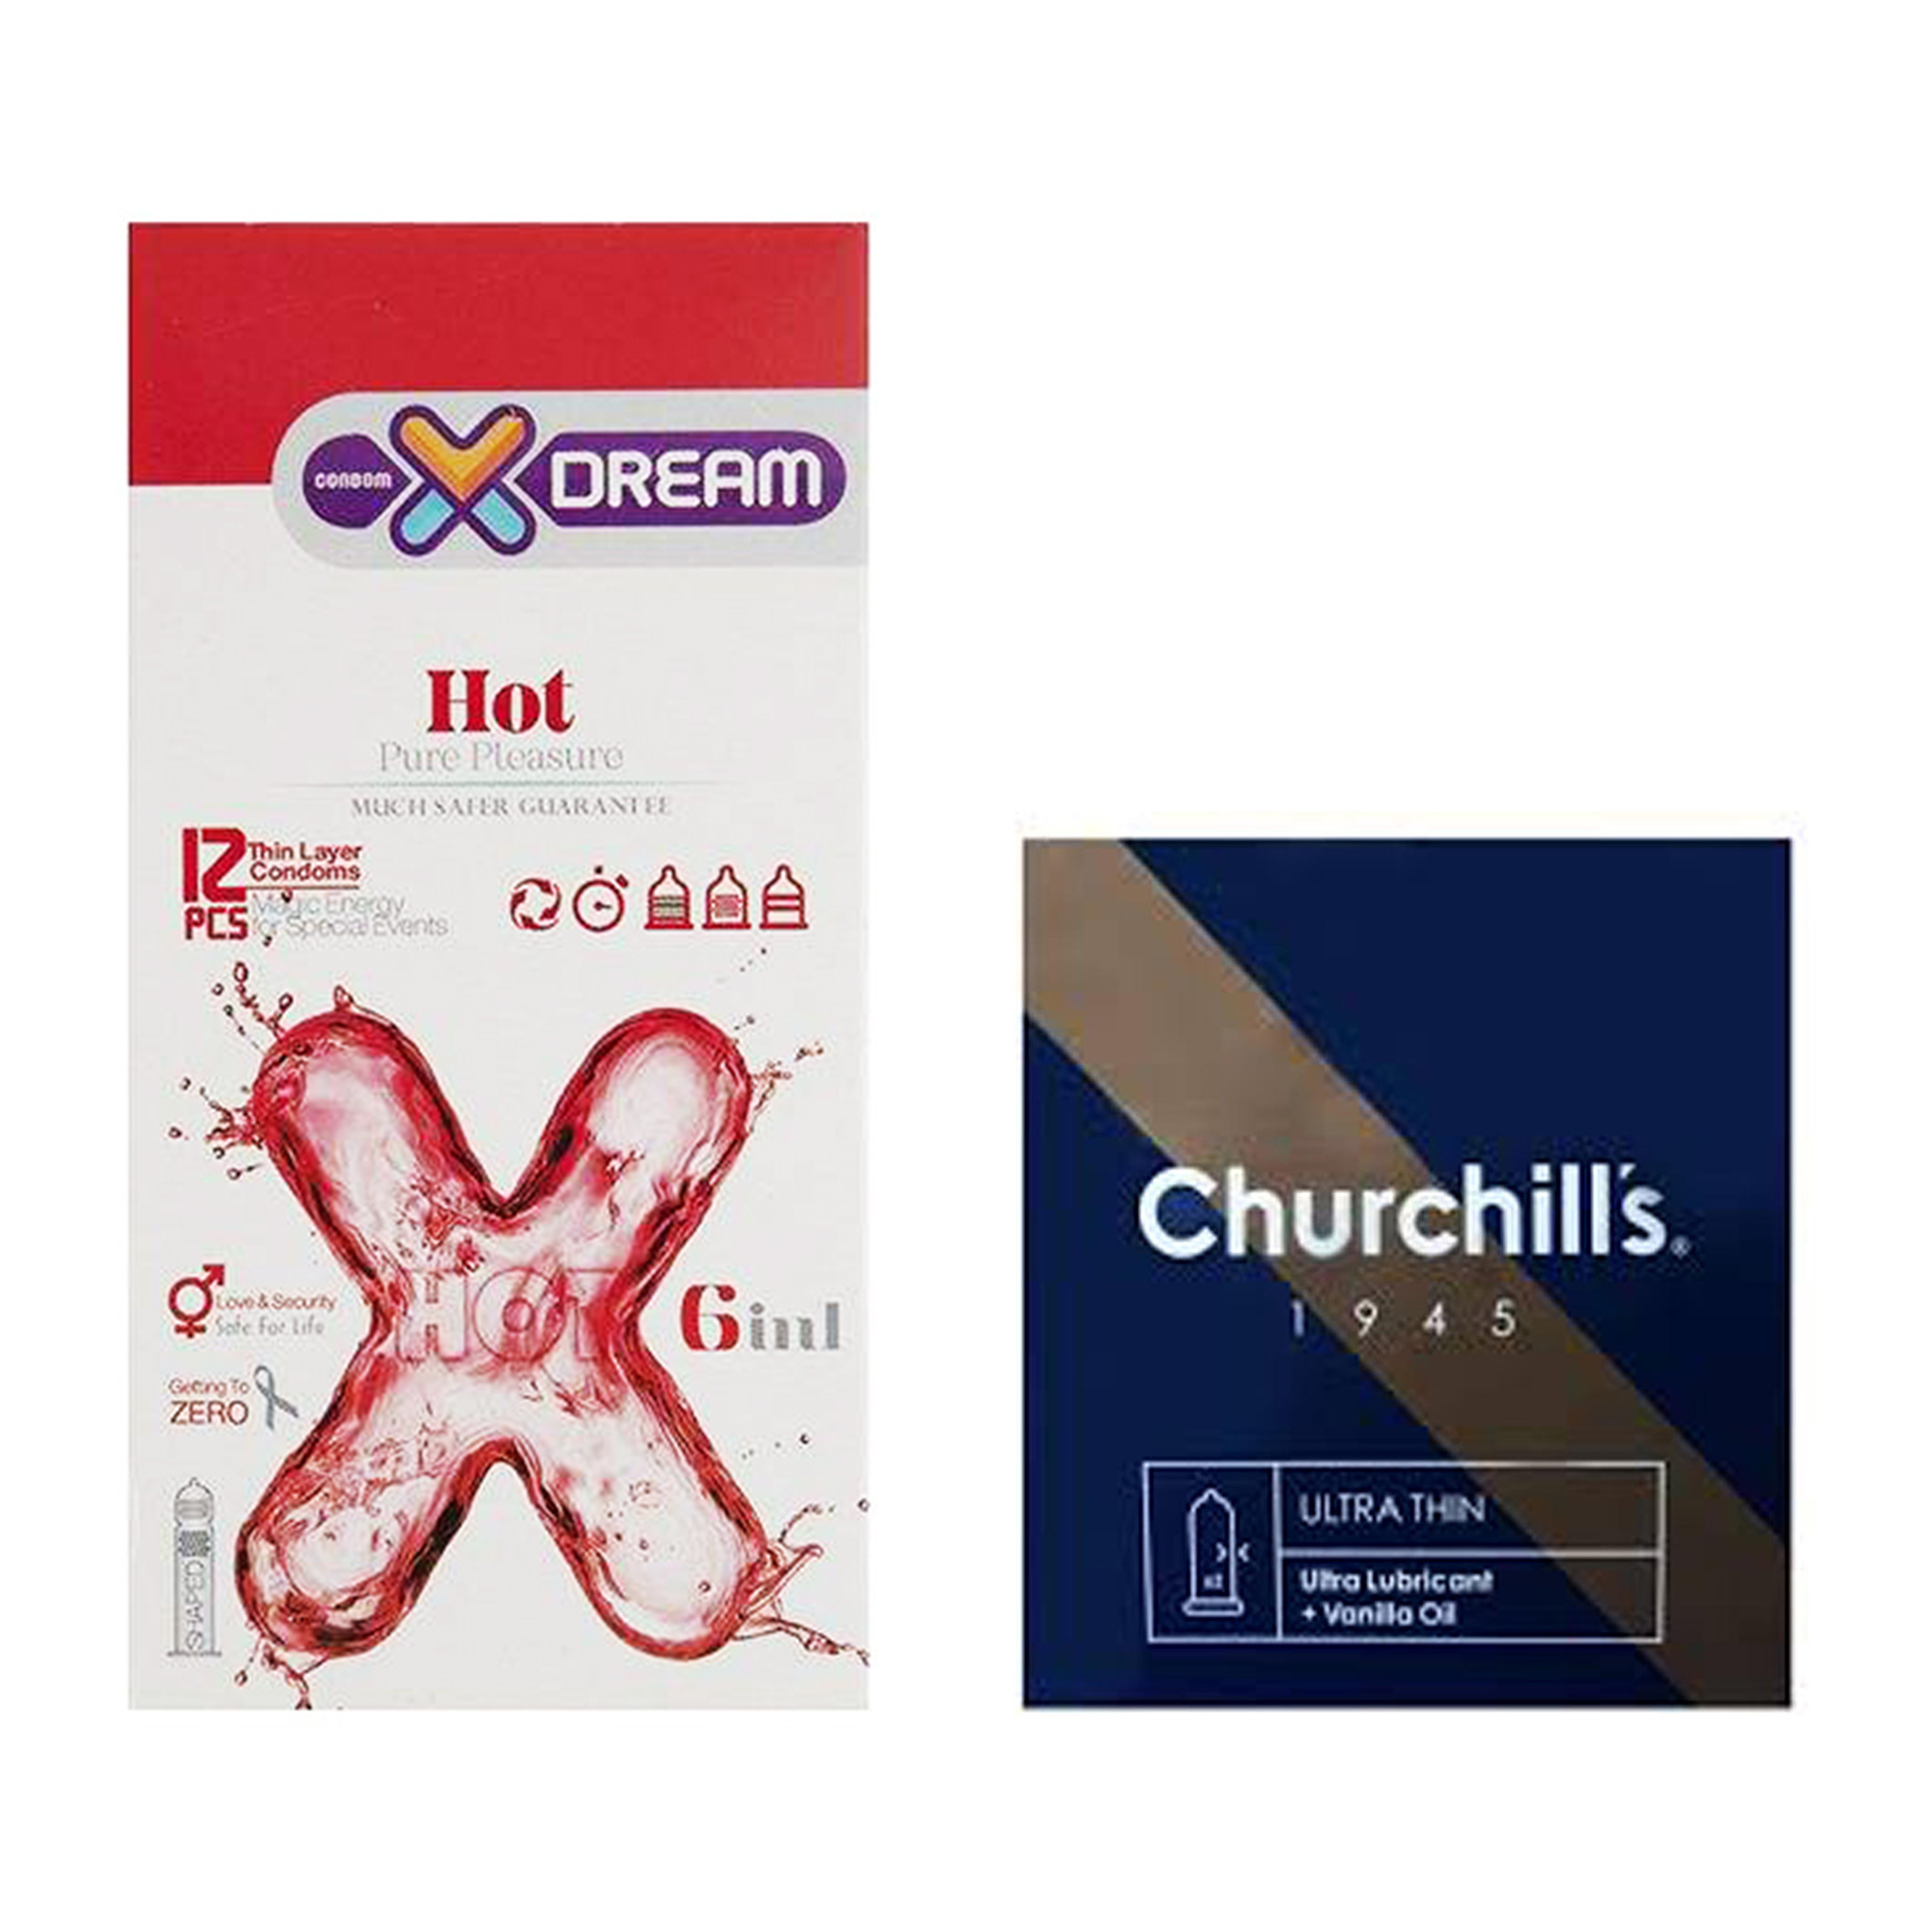 کاندوم چرچیلز مدل Ultra Thin بسته 3 عددی به همراه کاندوم ایکس دریم مدل Hot بسته 12 عددی